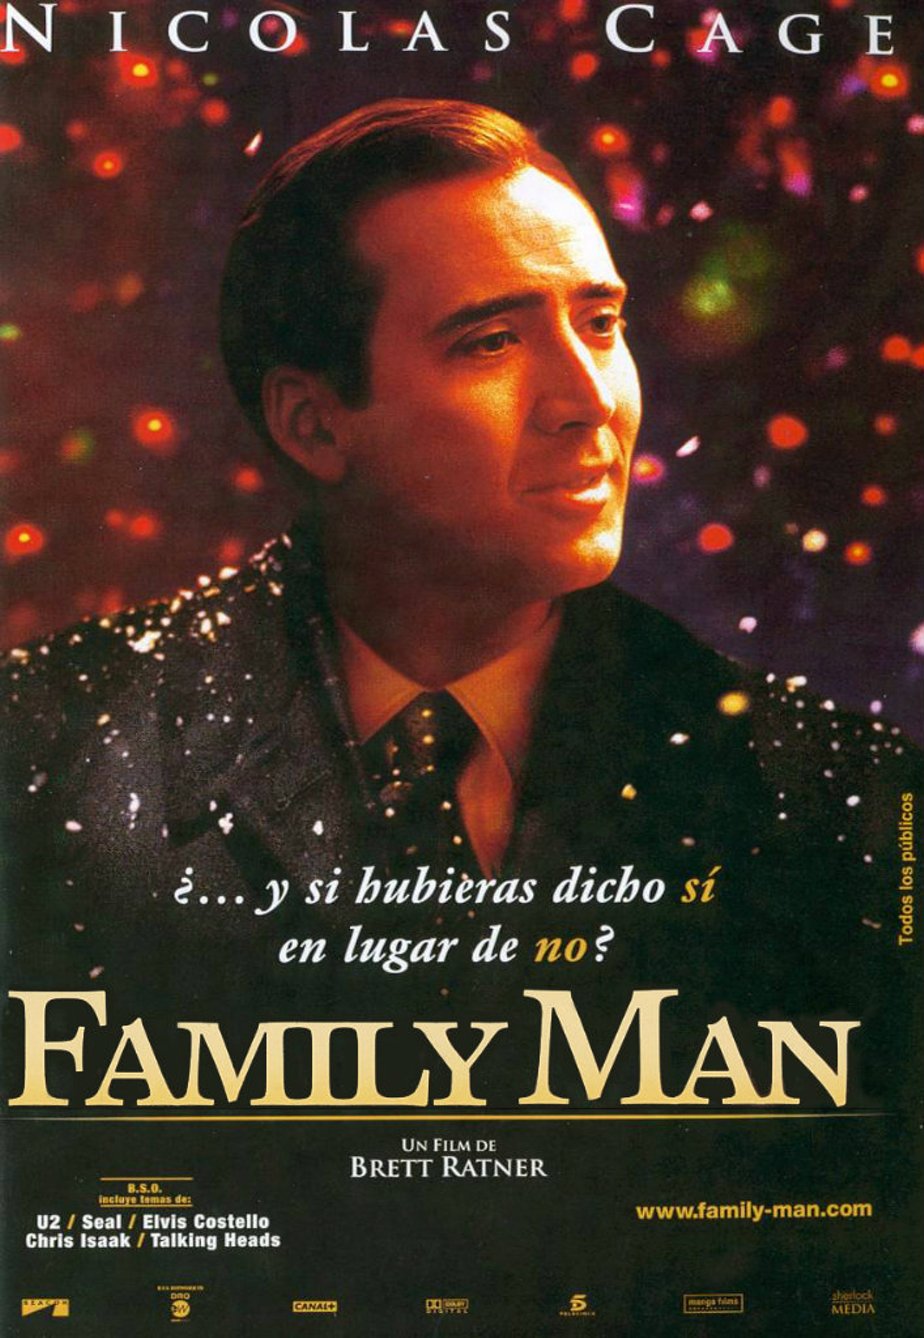 Семьянин год. Семьянин the Family man, 2000. Николас Кейдж семьянин.